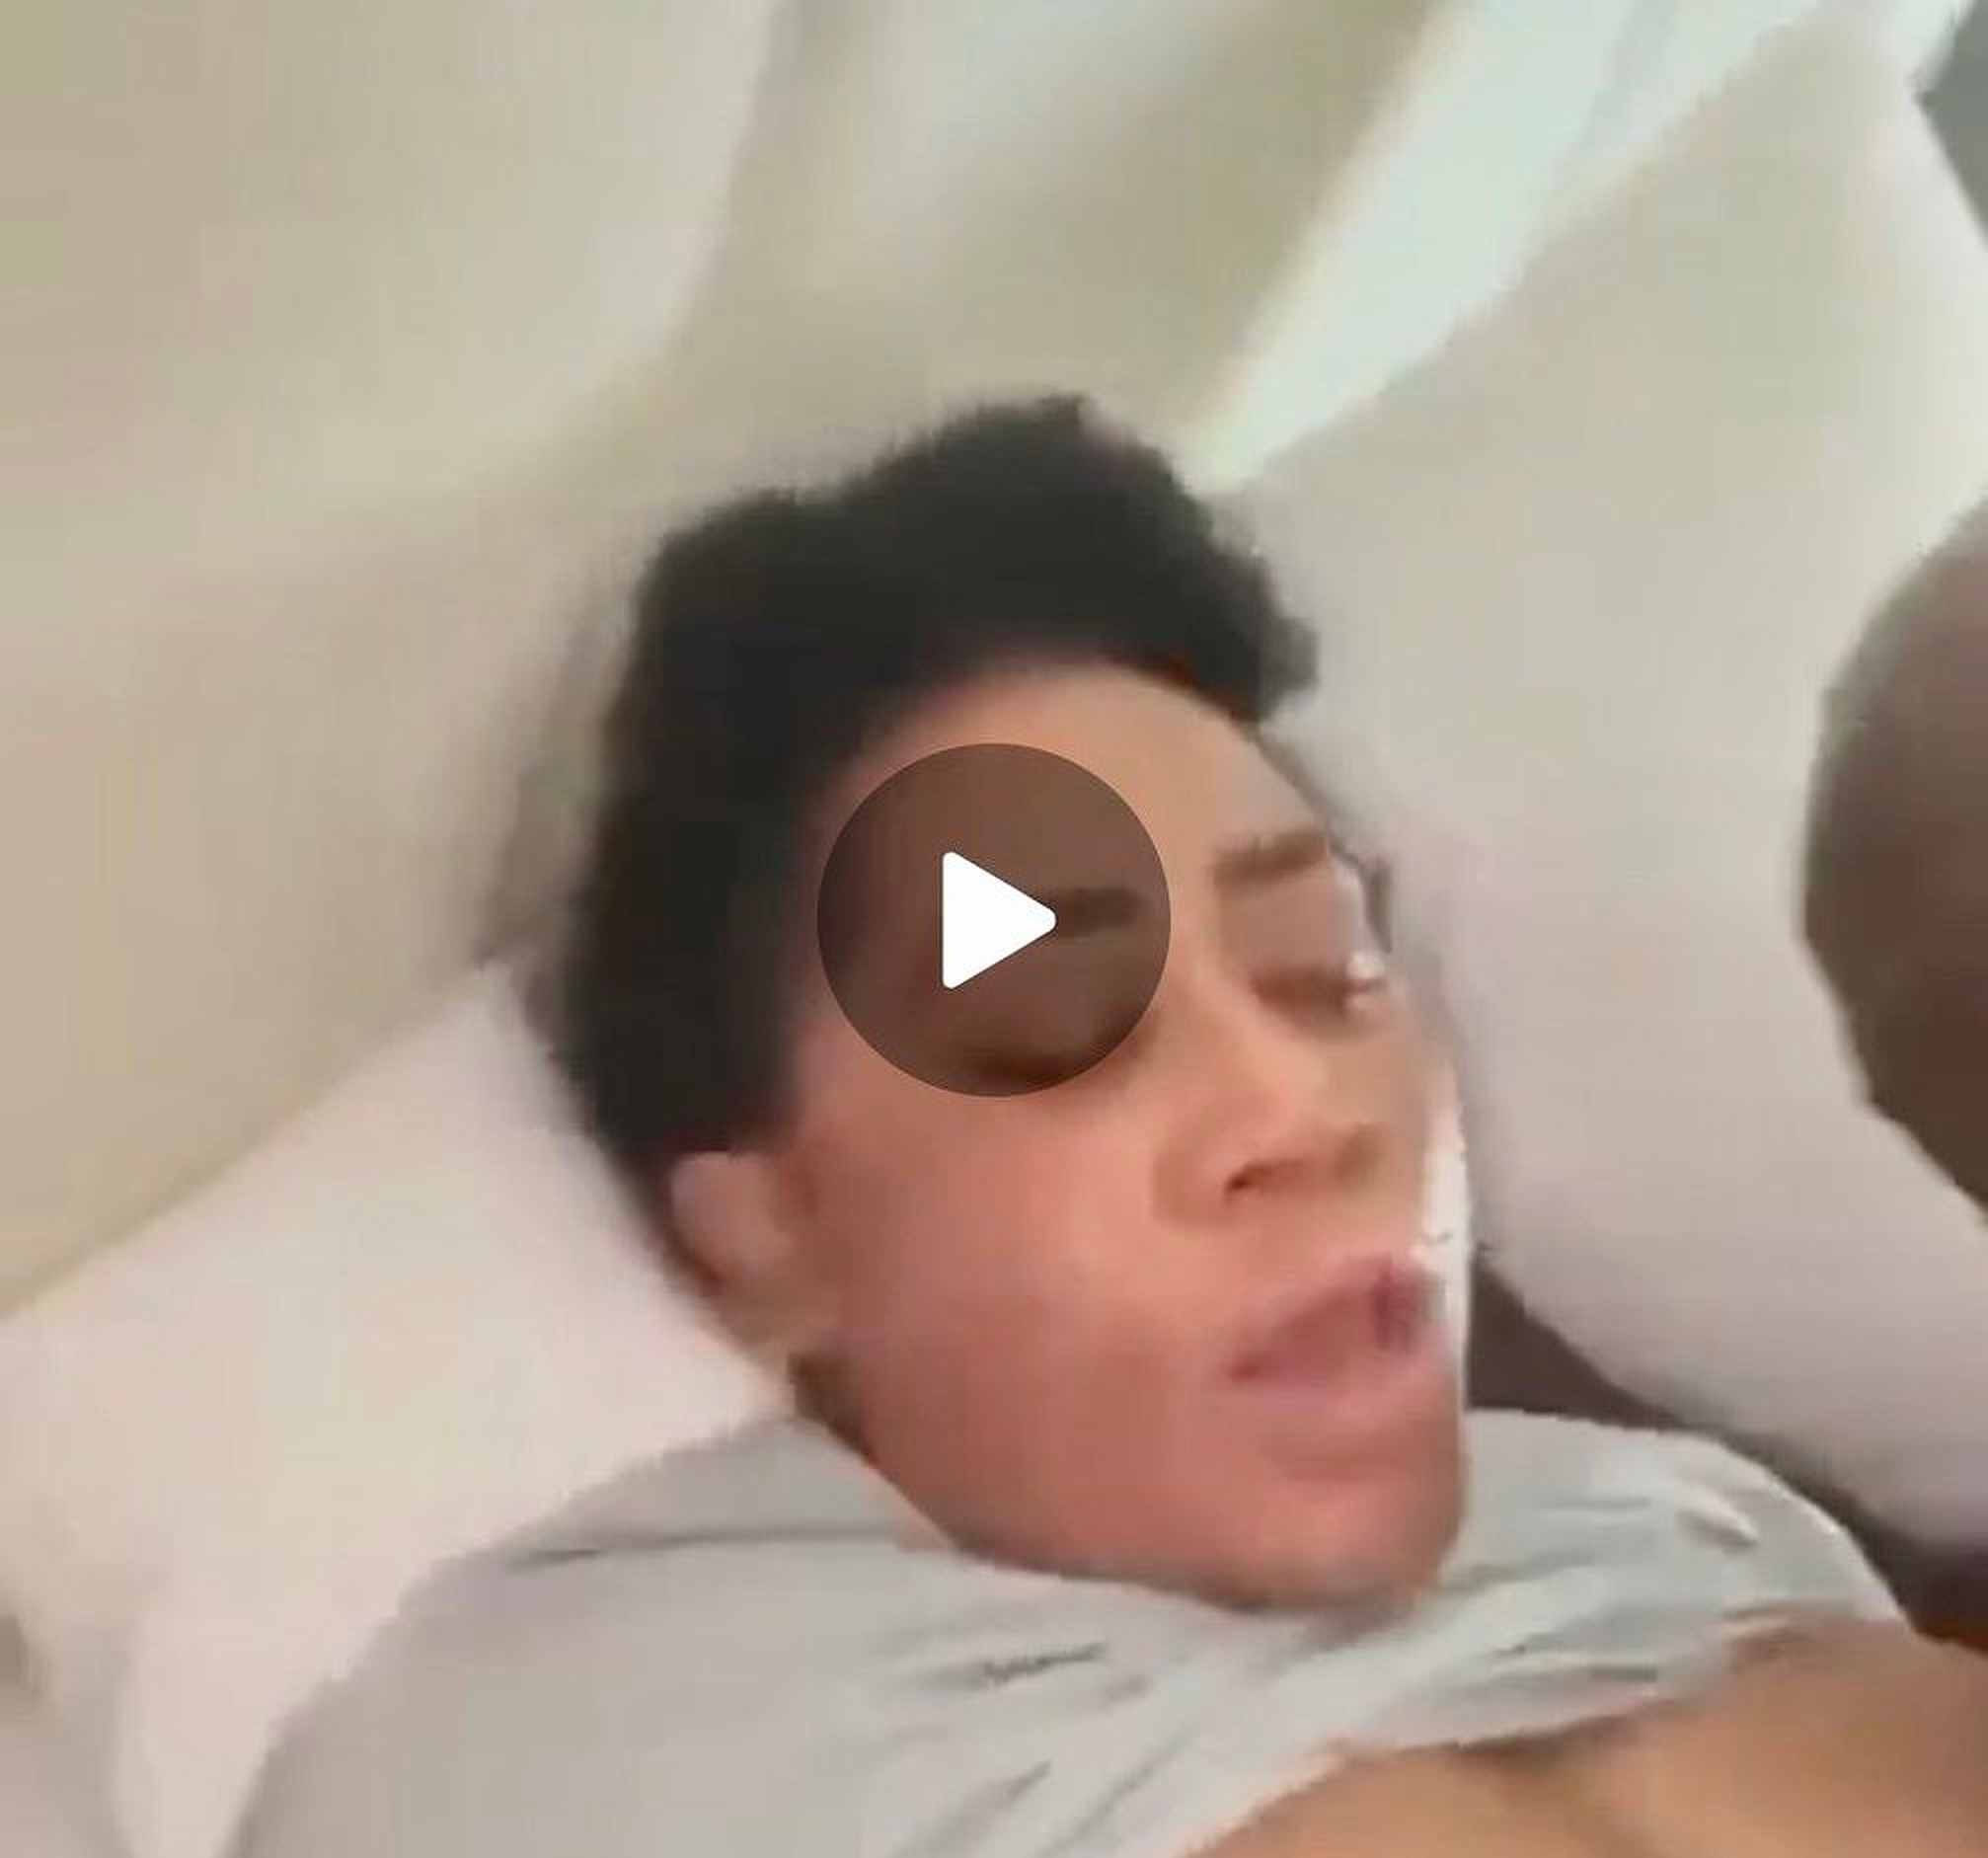 FULL VIDEO: Moyo Lawal Sextape Video Leaked On TikTok, Twitter & Instagram